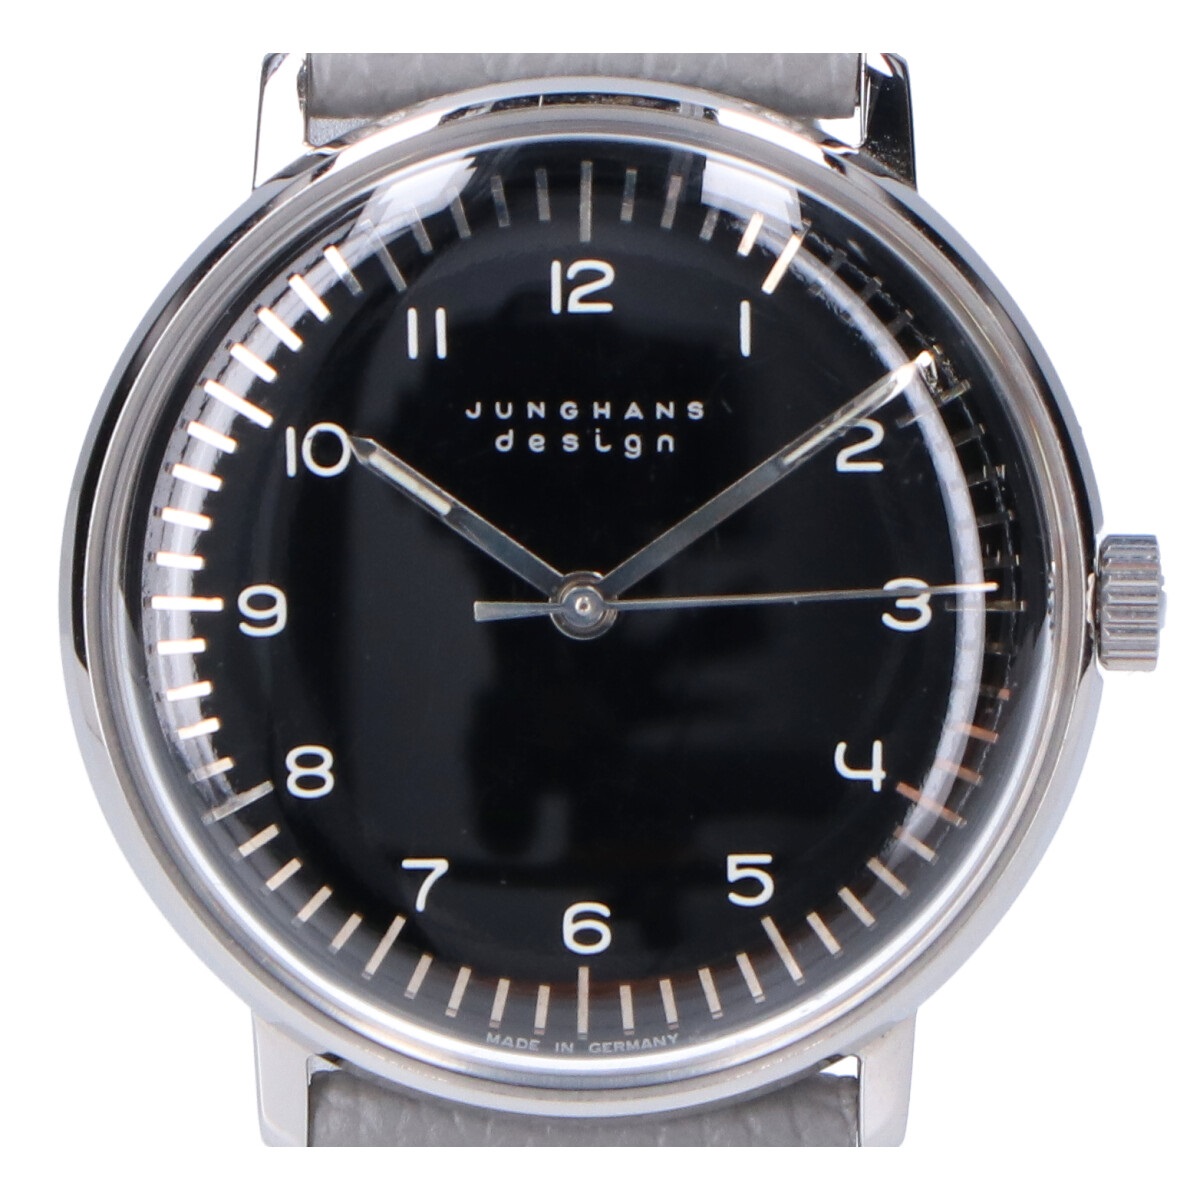 ユンハンスの27 3702 マックスビル 手巻き 腕時計の買取実績です。